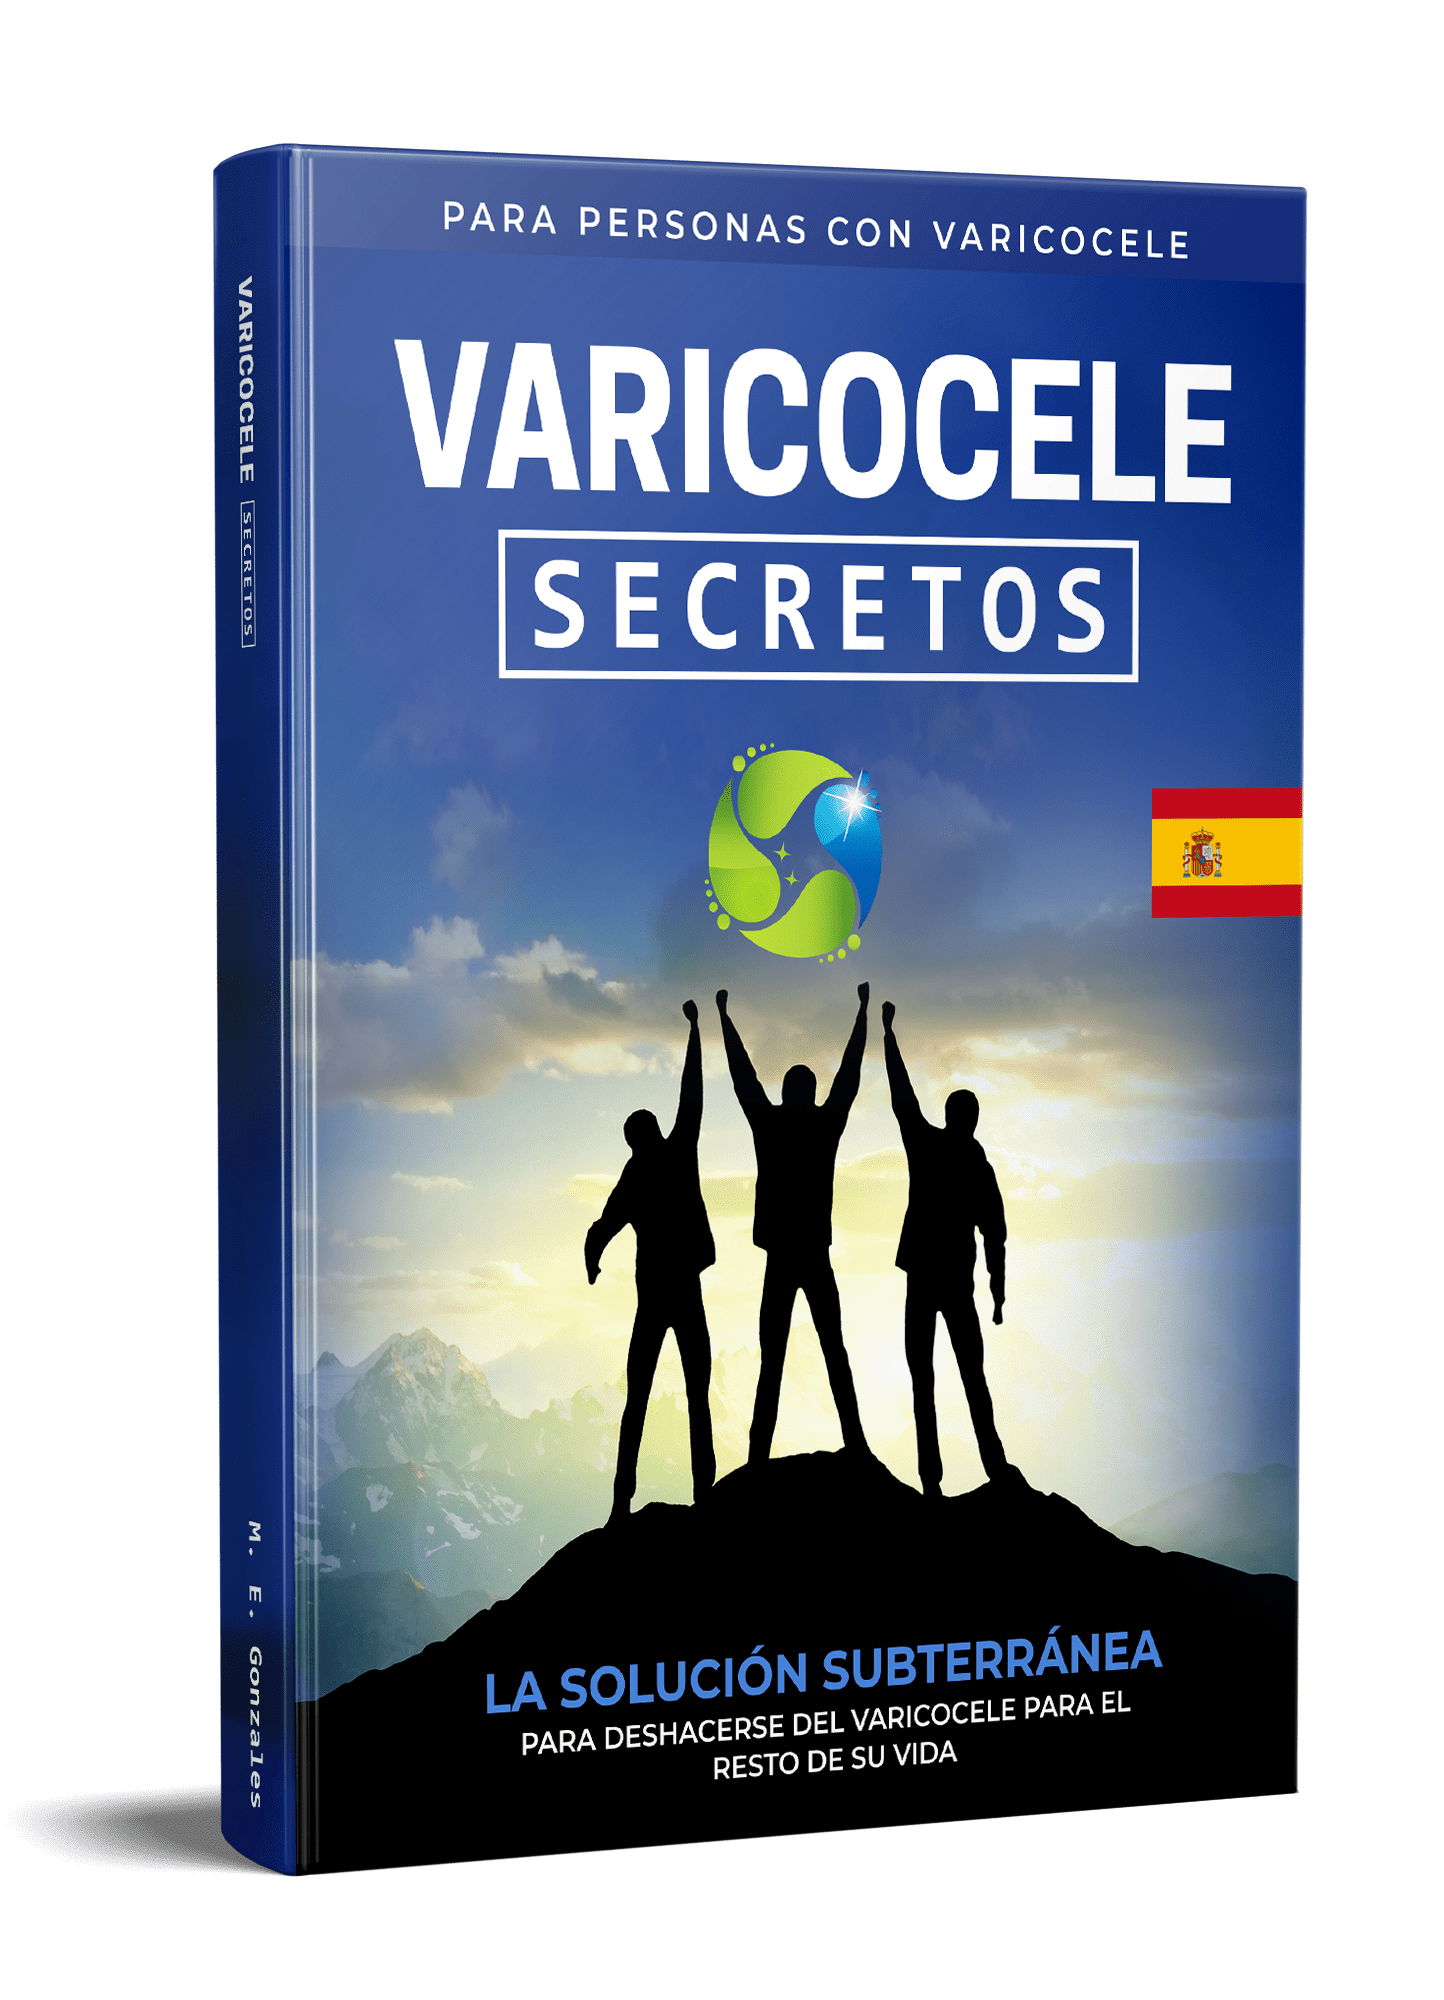 Spaanse geheimen van de Varicocele E-Libro